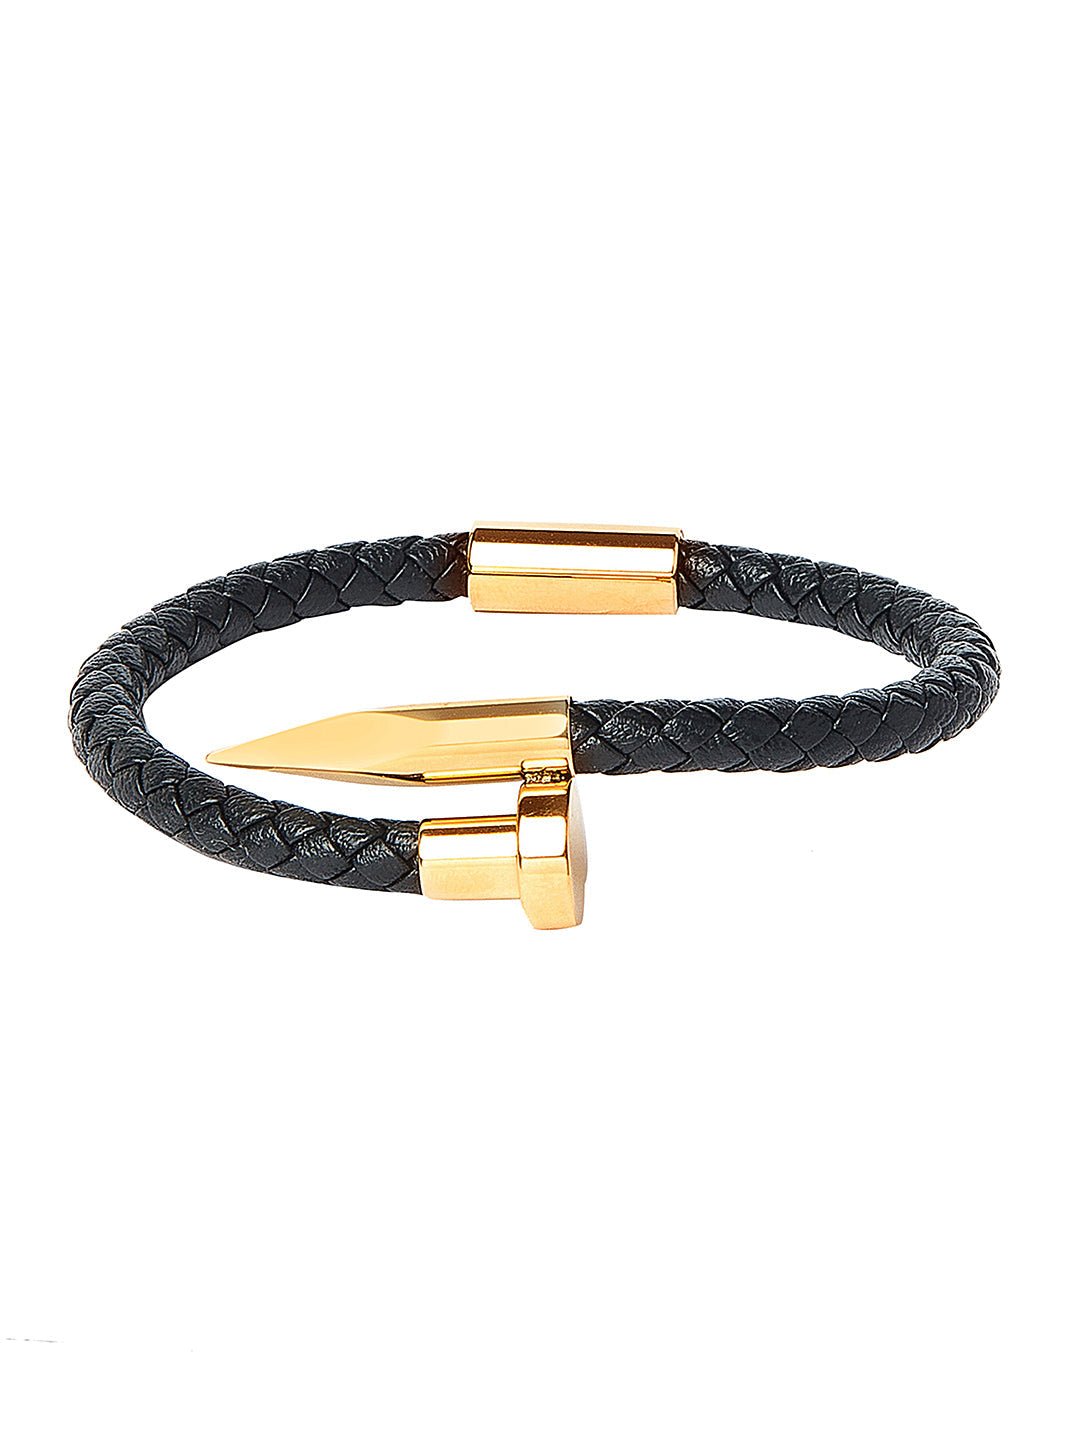 Designer Bracelet Luxury Designer Jewelry Mens Bracelets Fashion Men Jewelry  Multilayer Belt Circles Leather Bracelet Weaving Hand253Y From Sjtrg,  $26.29 | DHgate.Com